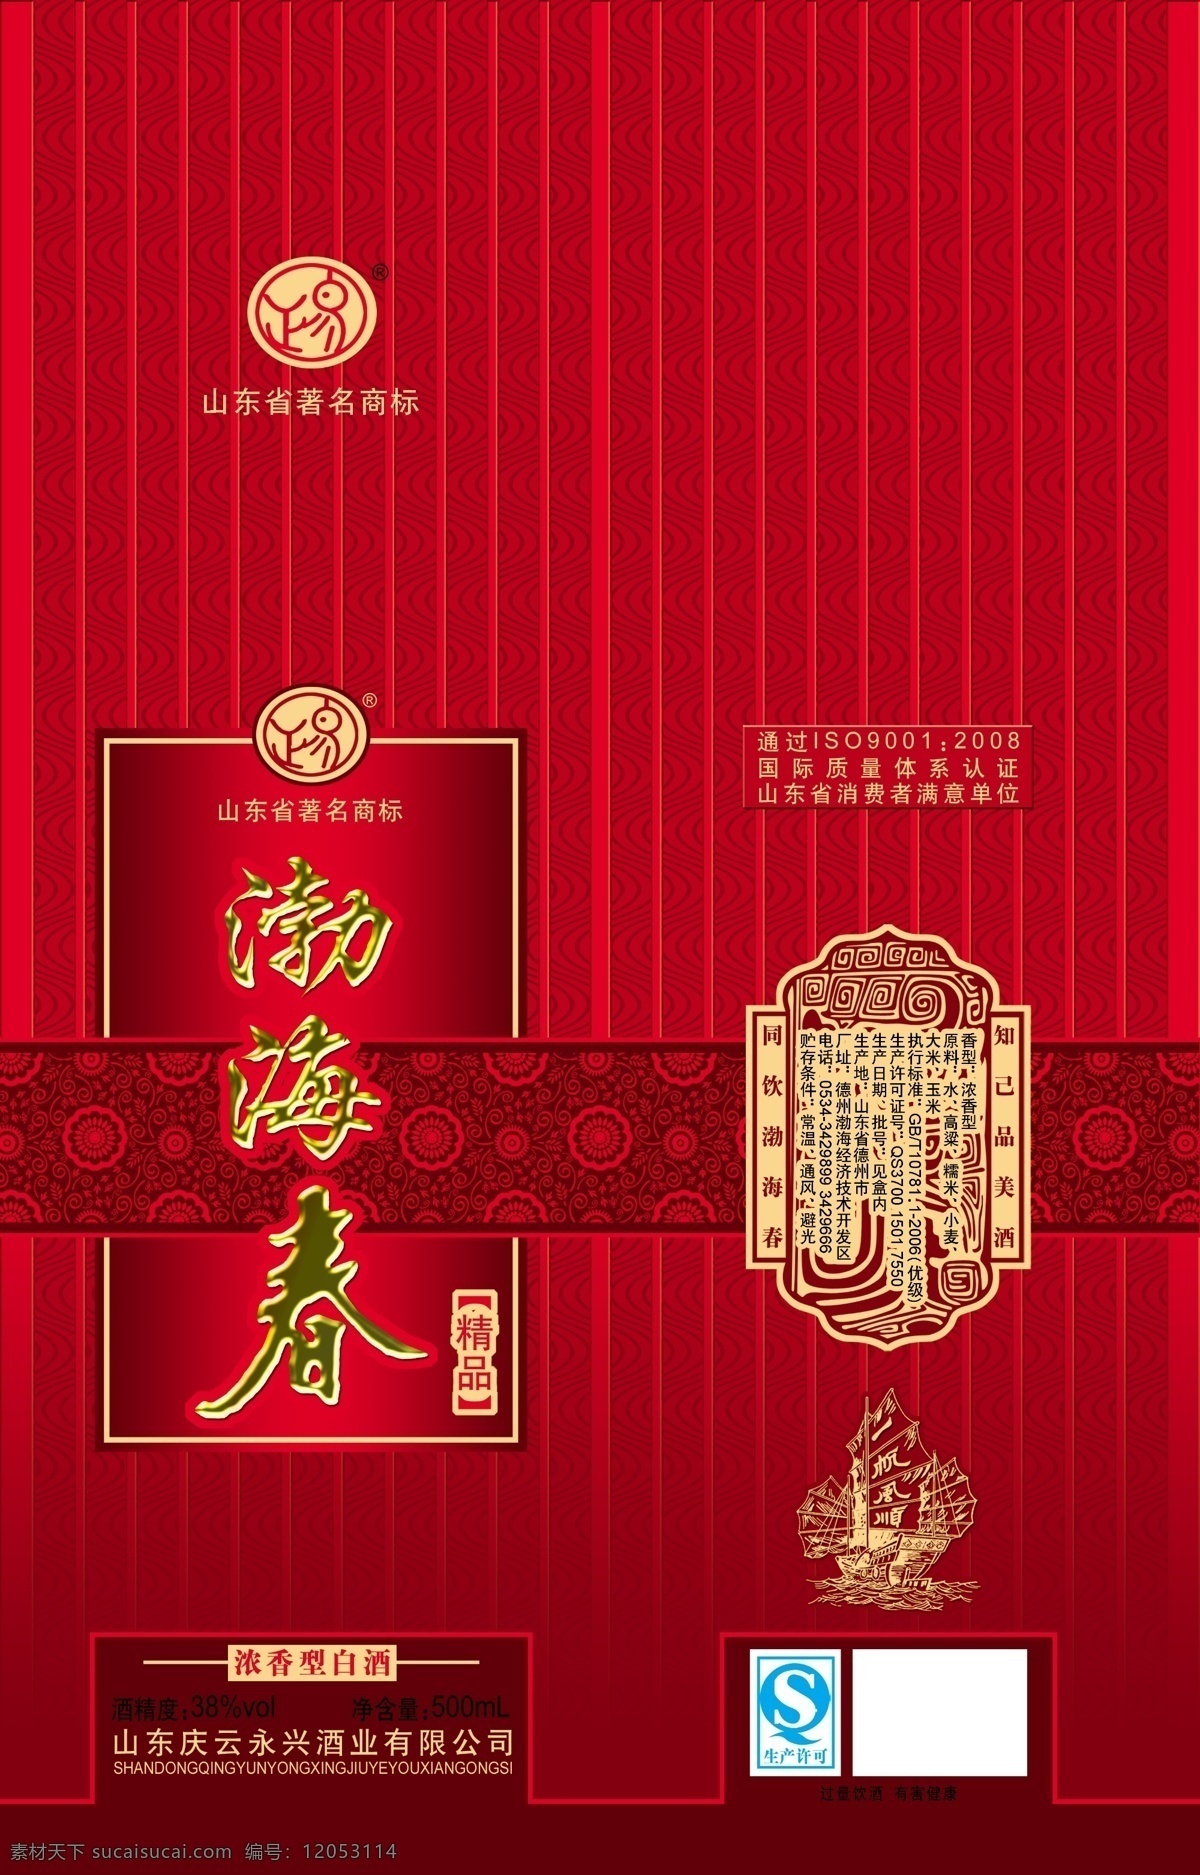 渤海春 酒品包装 包装模板 分层素材 设计素材 烟酒包装 psd源文件 红色